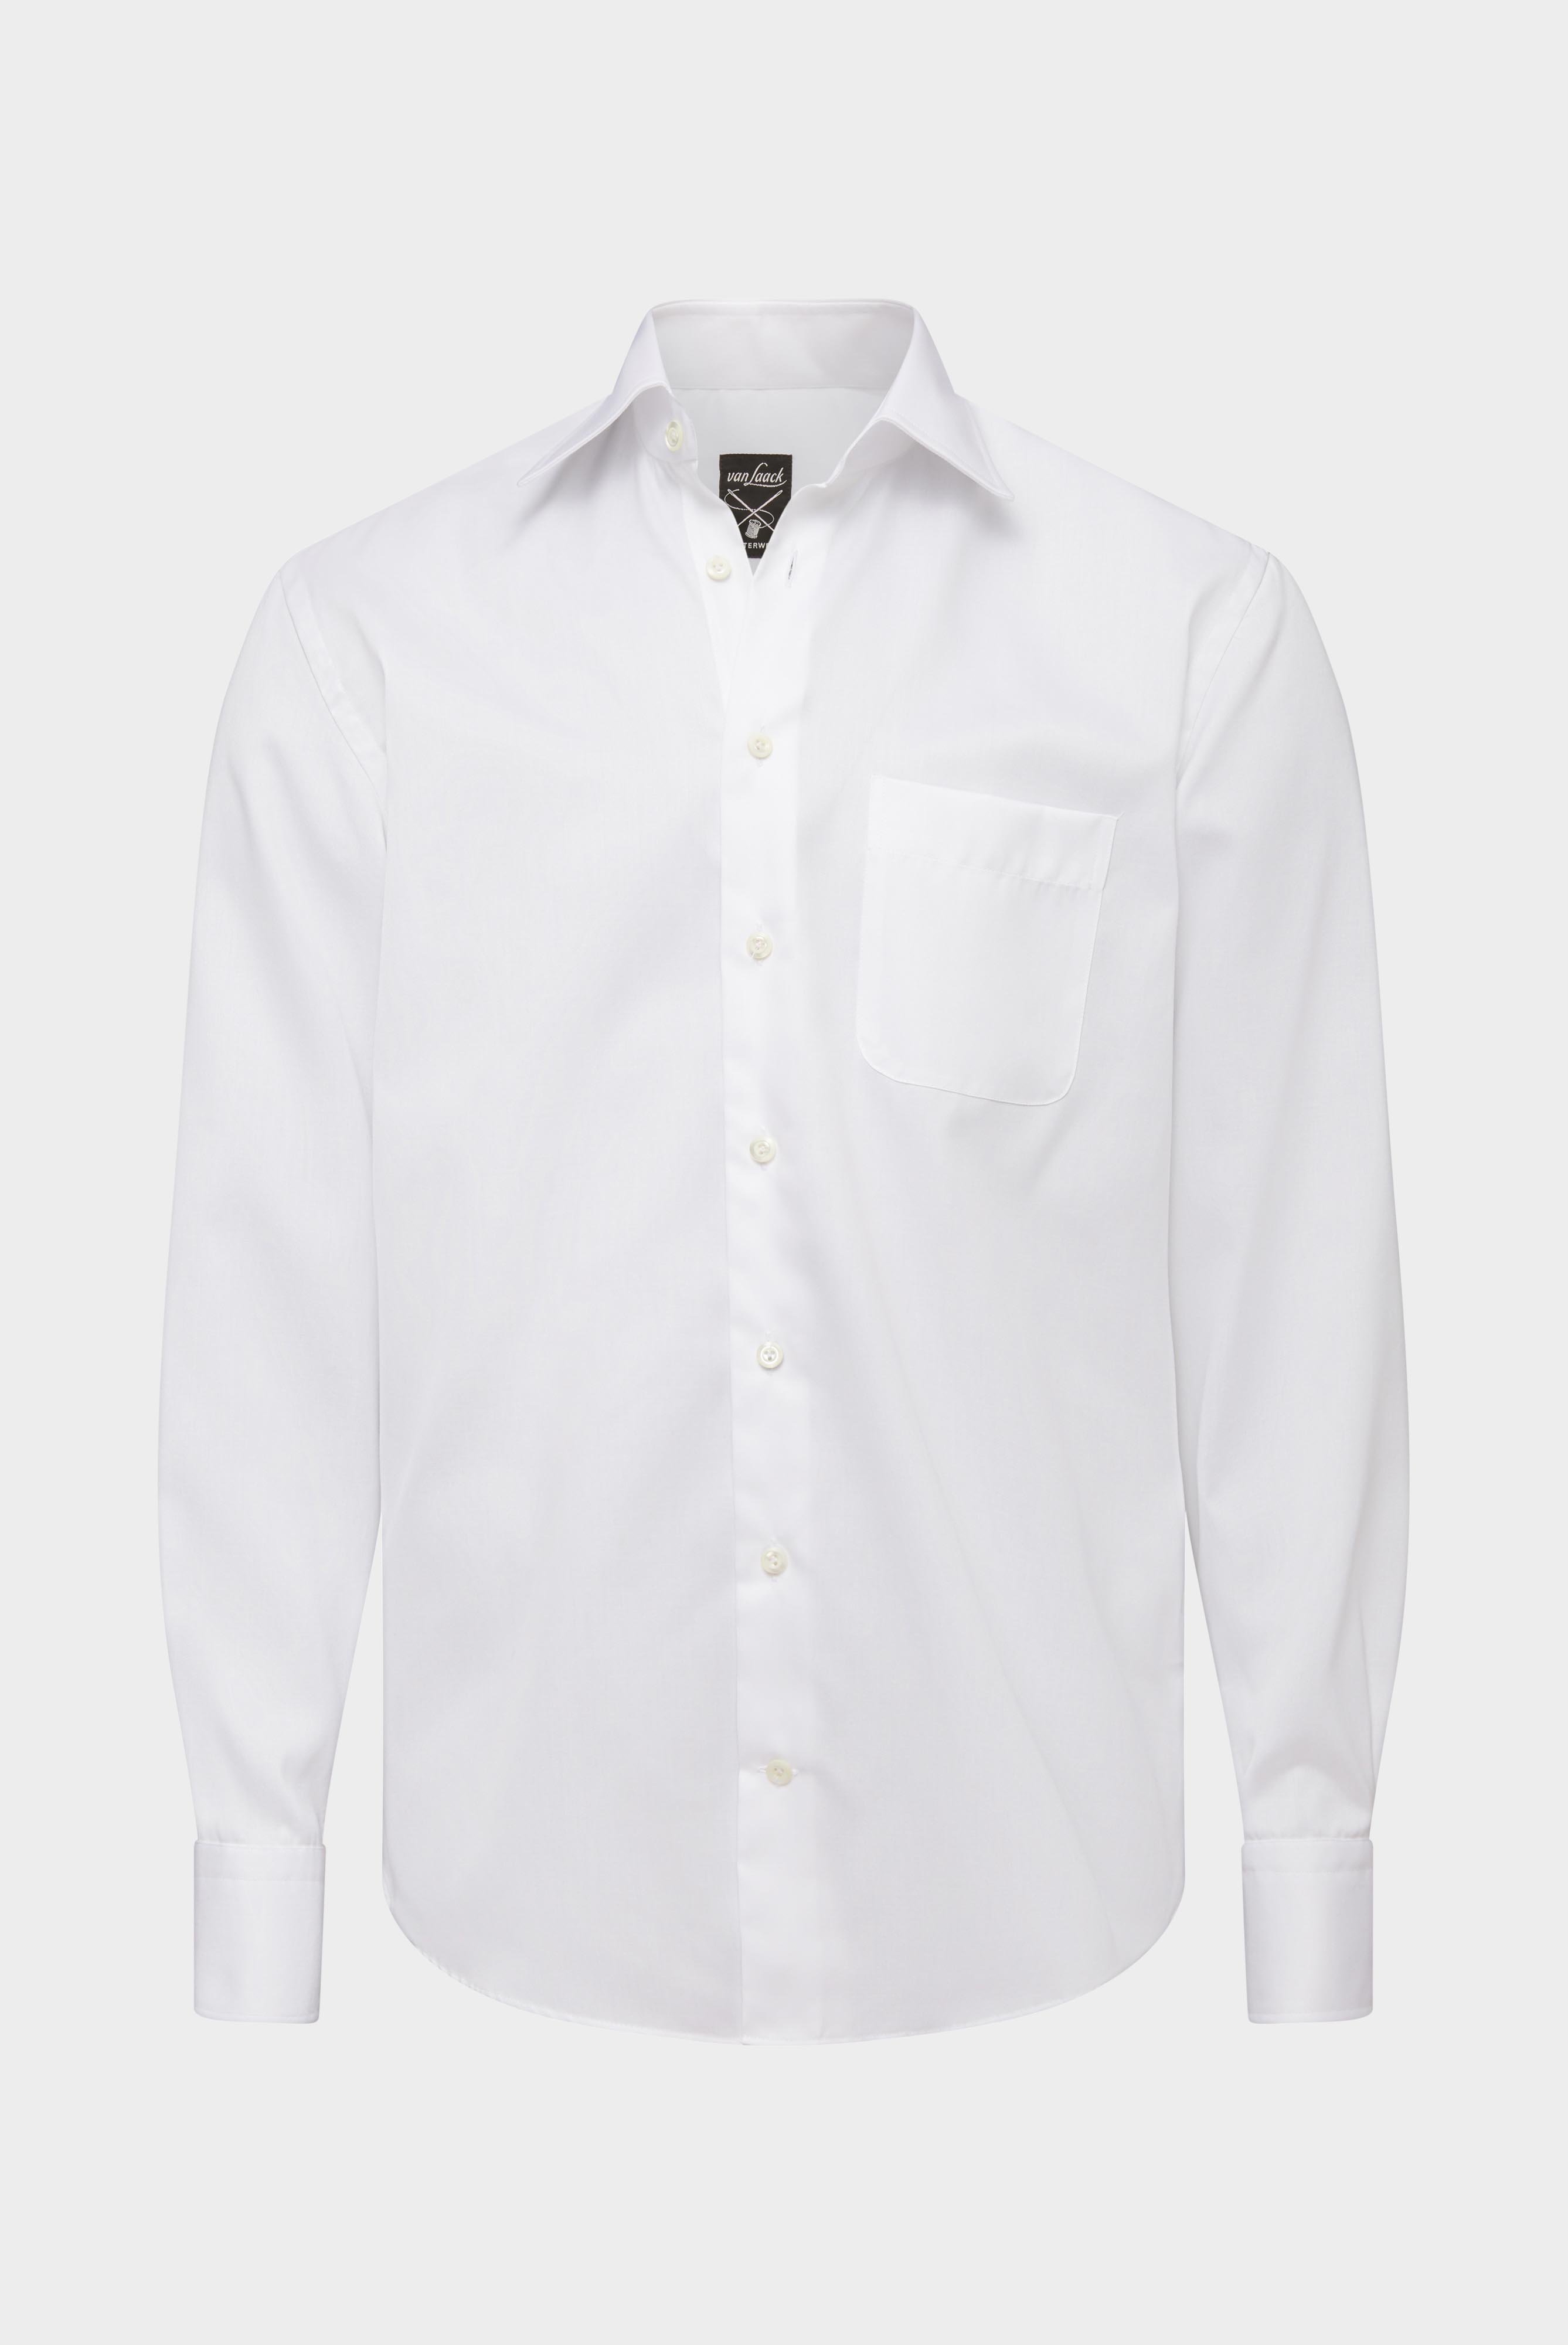 Bügelleichte Hemden+Bügelfreies Twill Hemd Comfort Fit+20.2046.BQ.132241.000.45